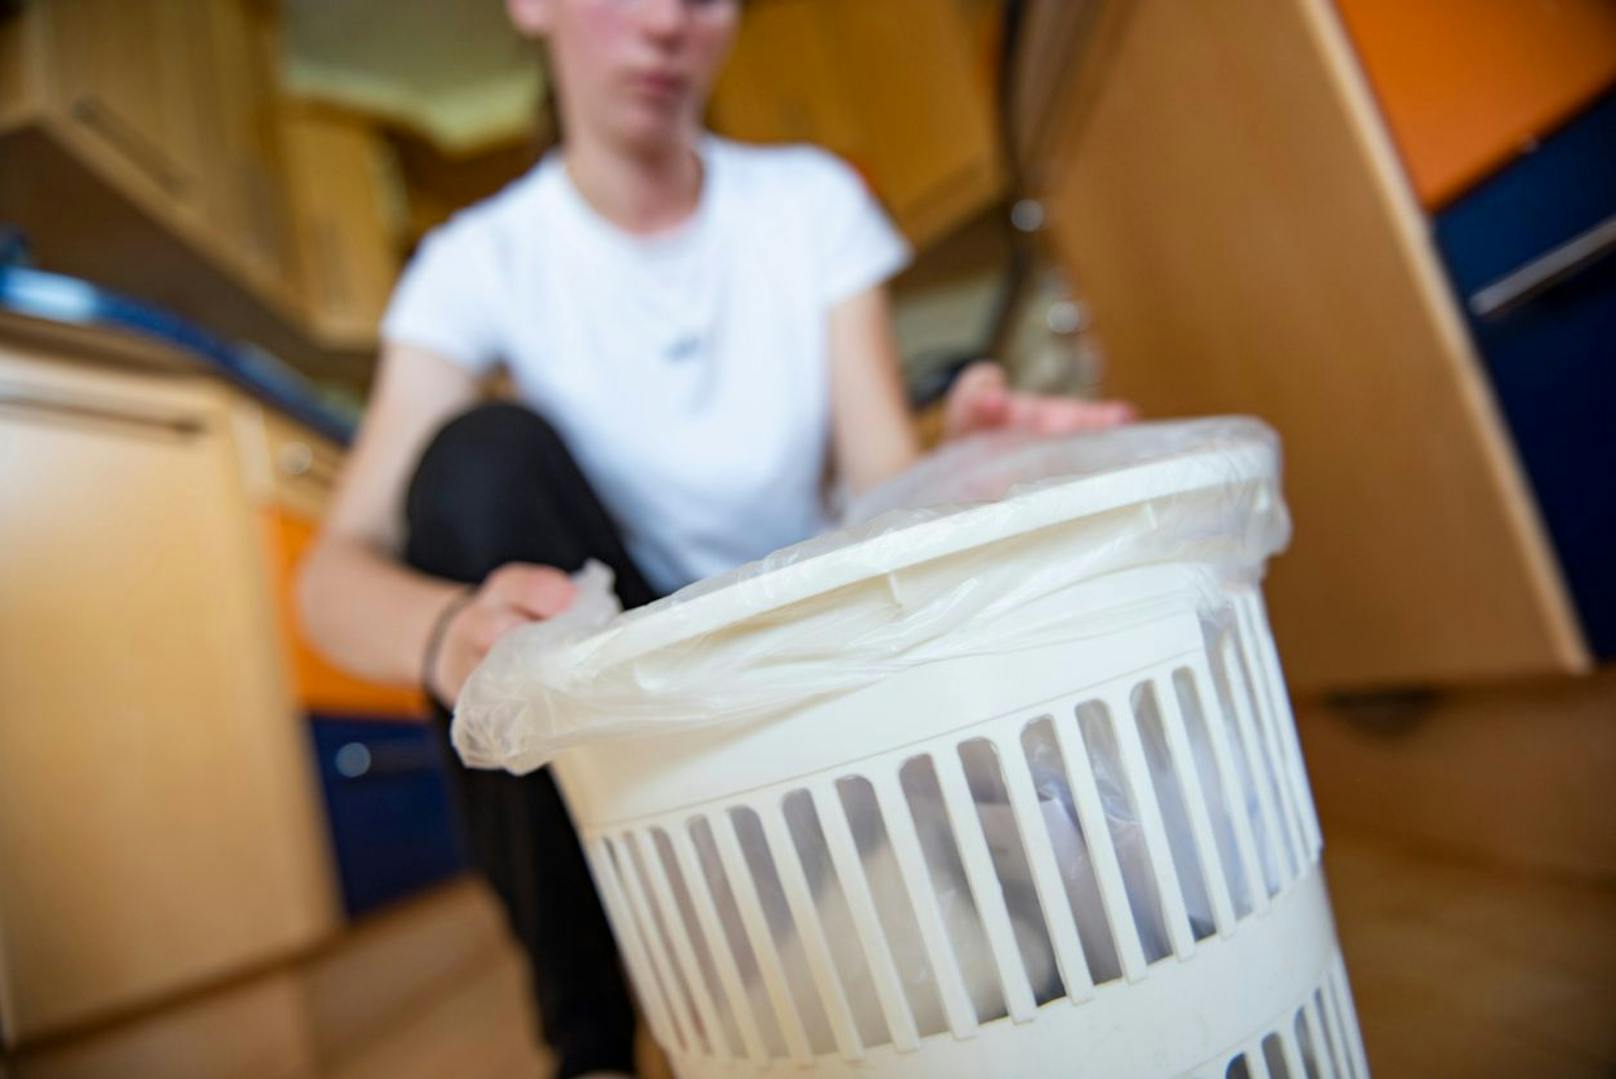 All die Taschentücher, die du verbraucht hast gelangen natürlich in deinen Mülleimer. Wenn du wieder bei Kräften bist solltest du diesen entleeren und auch gleich deinen Mülleimer desinfizieren, da sich auch dort gerne viele Keime ansammeln. 